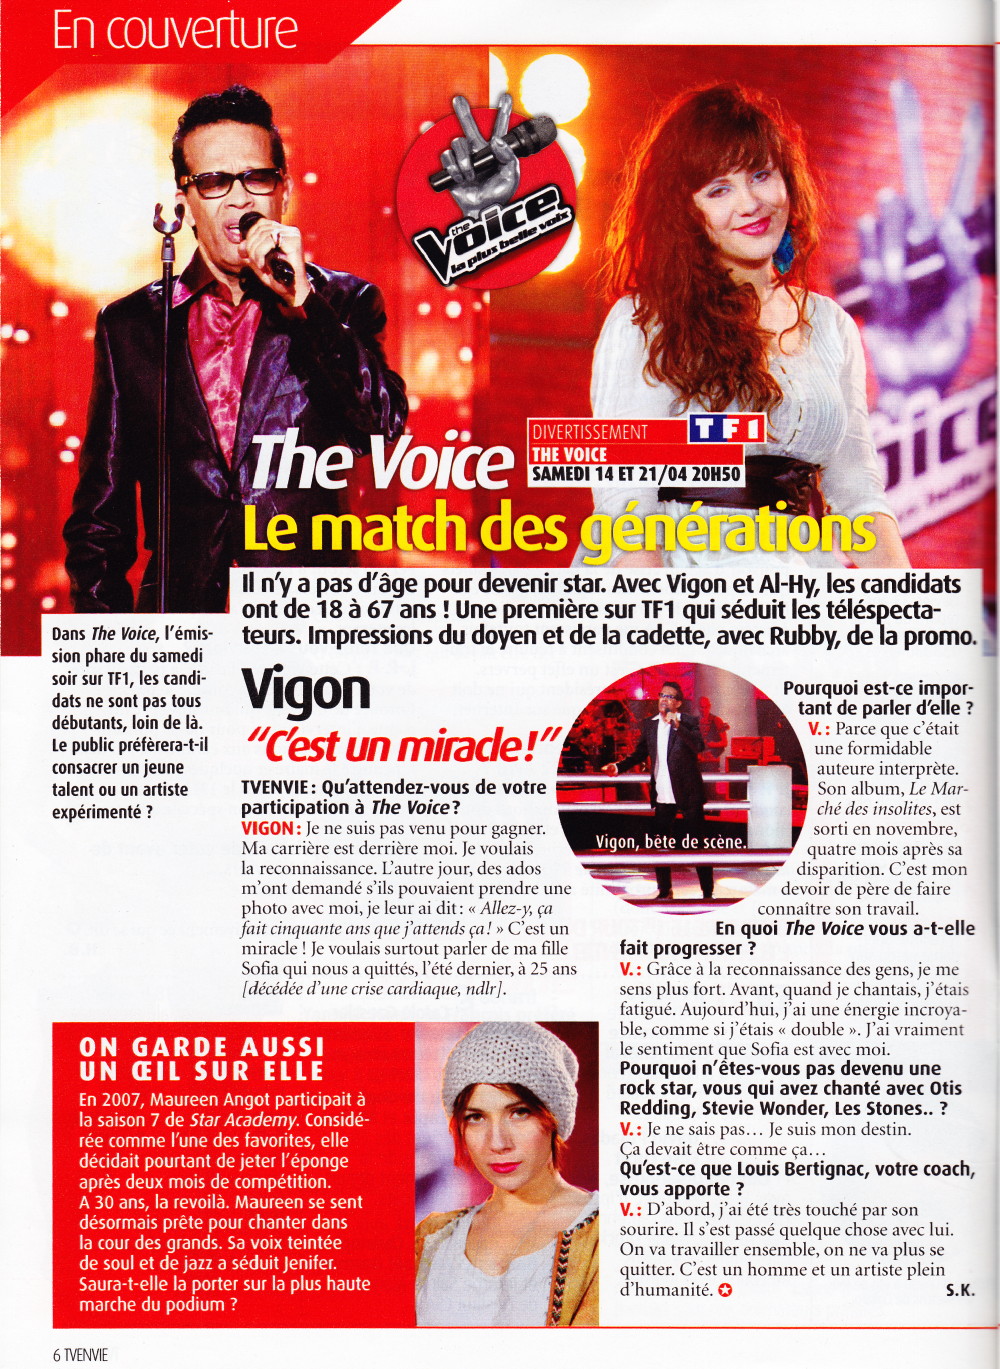 "VIGON, Papa soul" (4e de couverture de "Libération", 14 avril 2012) 1204140422481423619717554